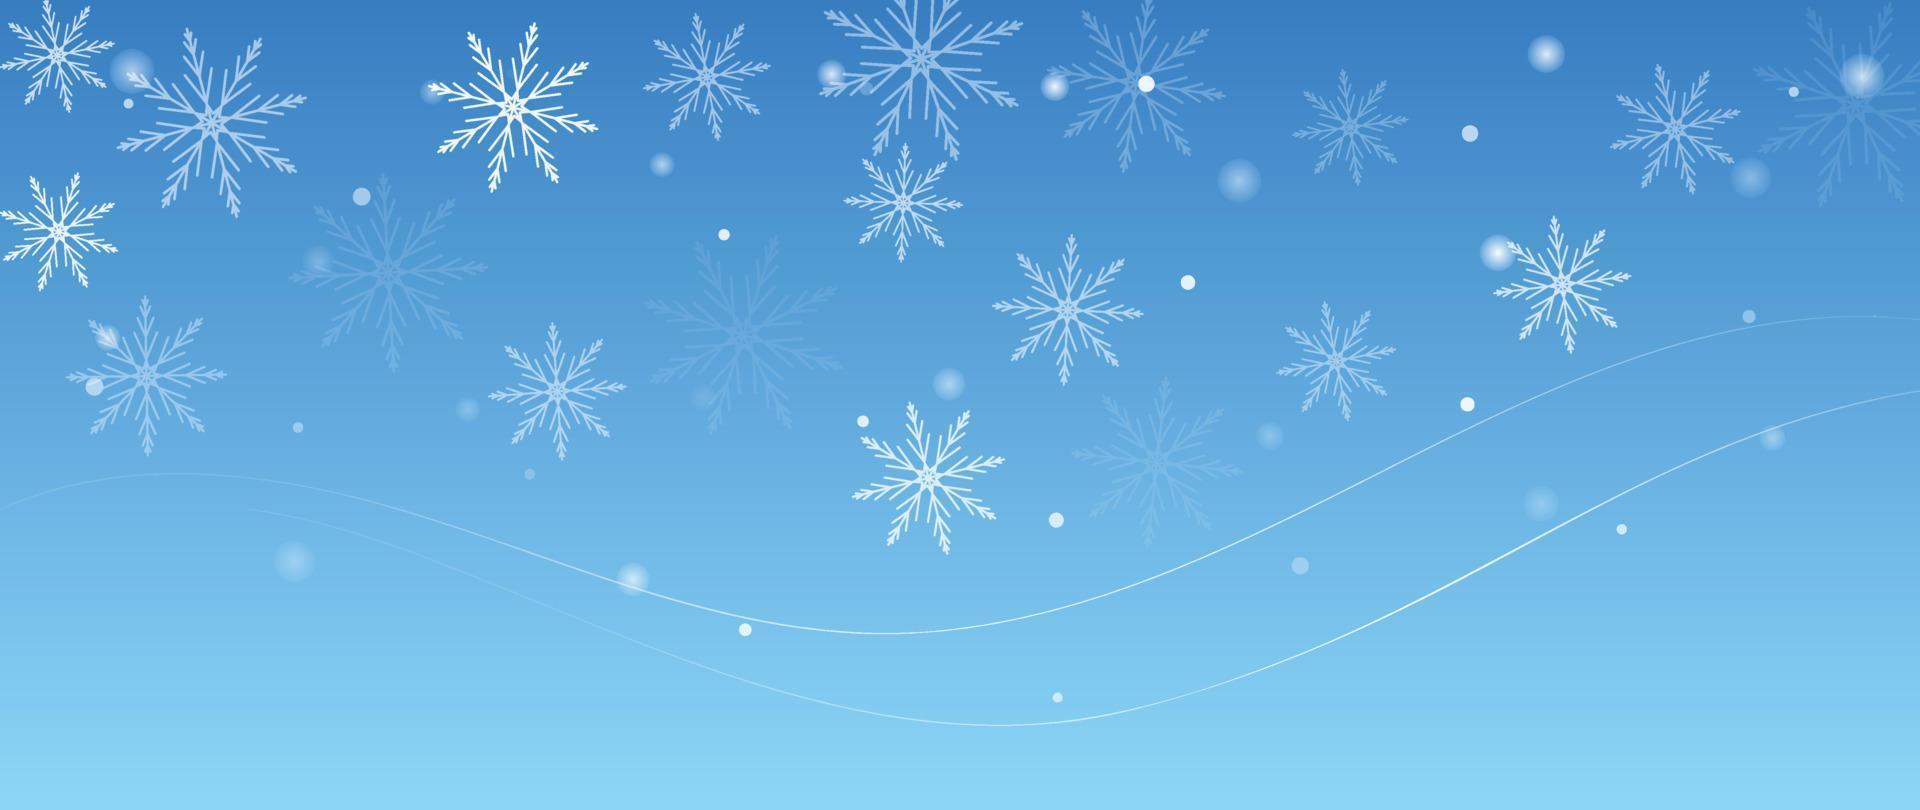 elegante Winterschneeflockehintergrund-Vektorillustration. luxuriöse dekorative schneeflocke und funkeln auf hellblauem hintergrund. Design geeignet für Einladungskarte, Gruß, Tapete, Poster, Banner. vektor